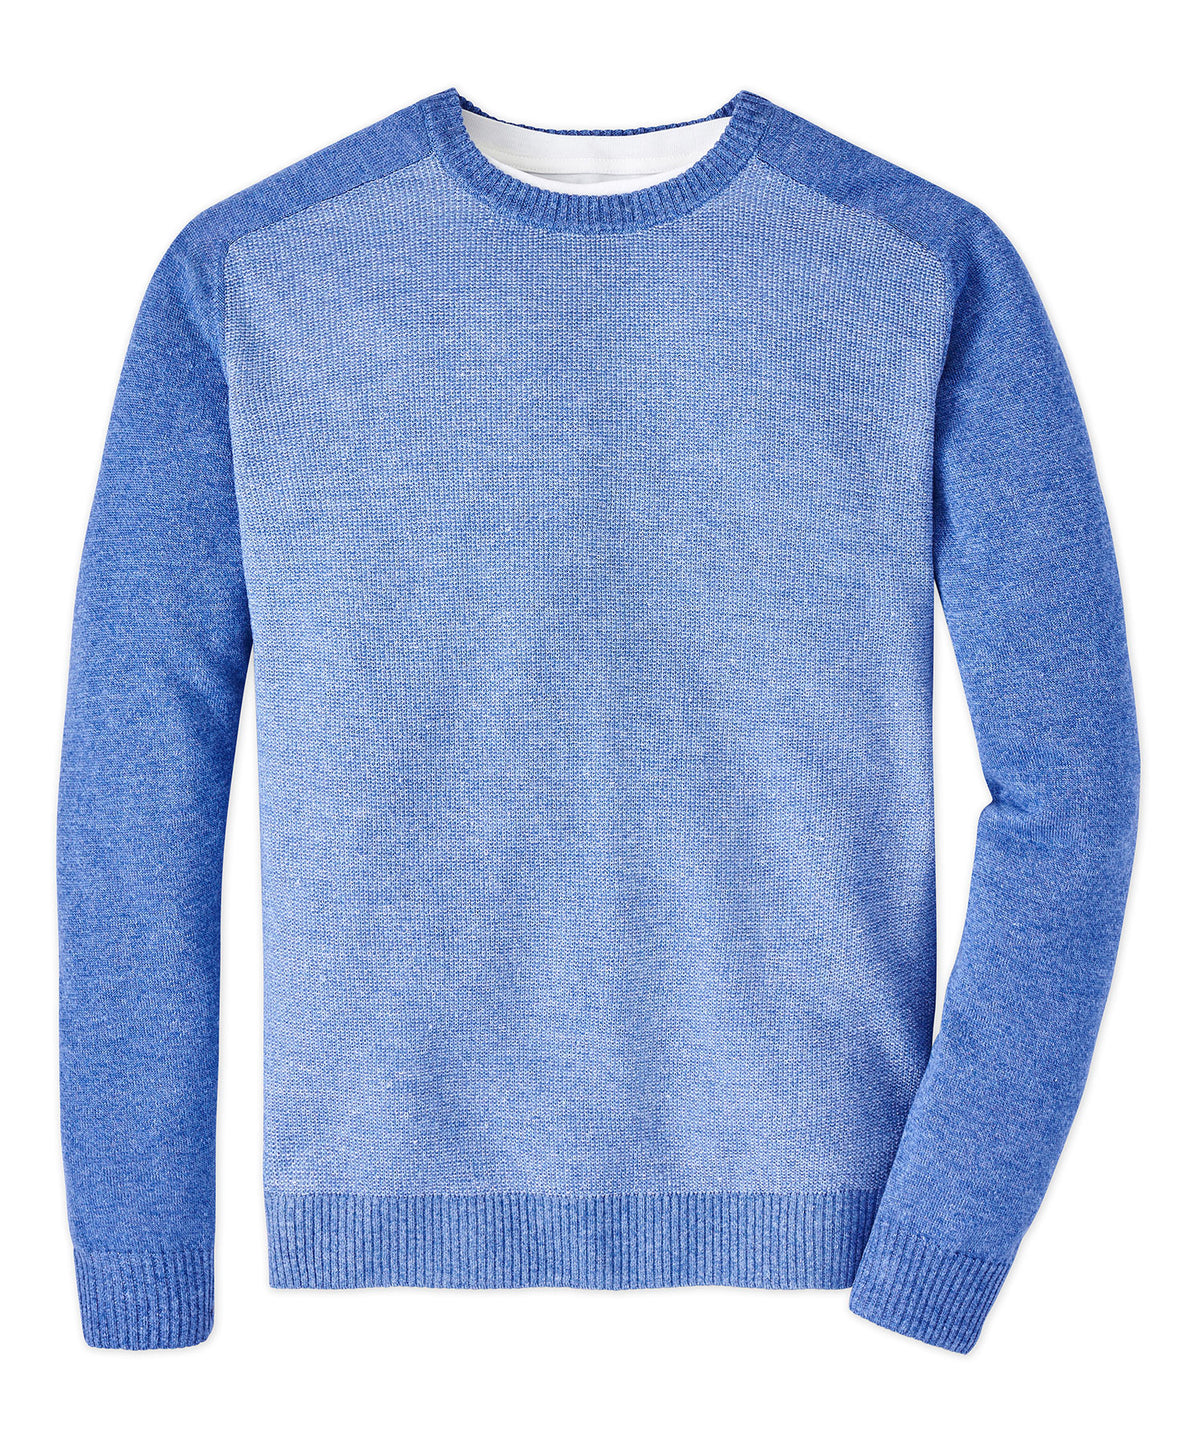 Peter Millar Stafford Crew Neck Sweater, Big & Tall